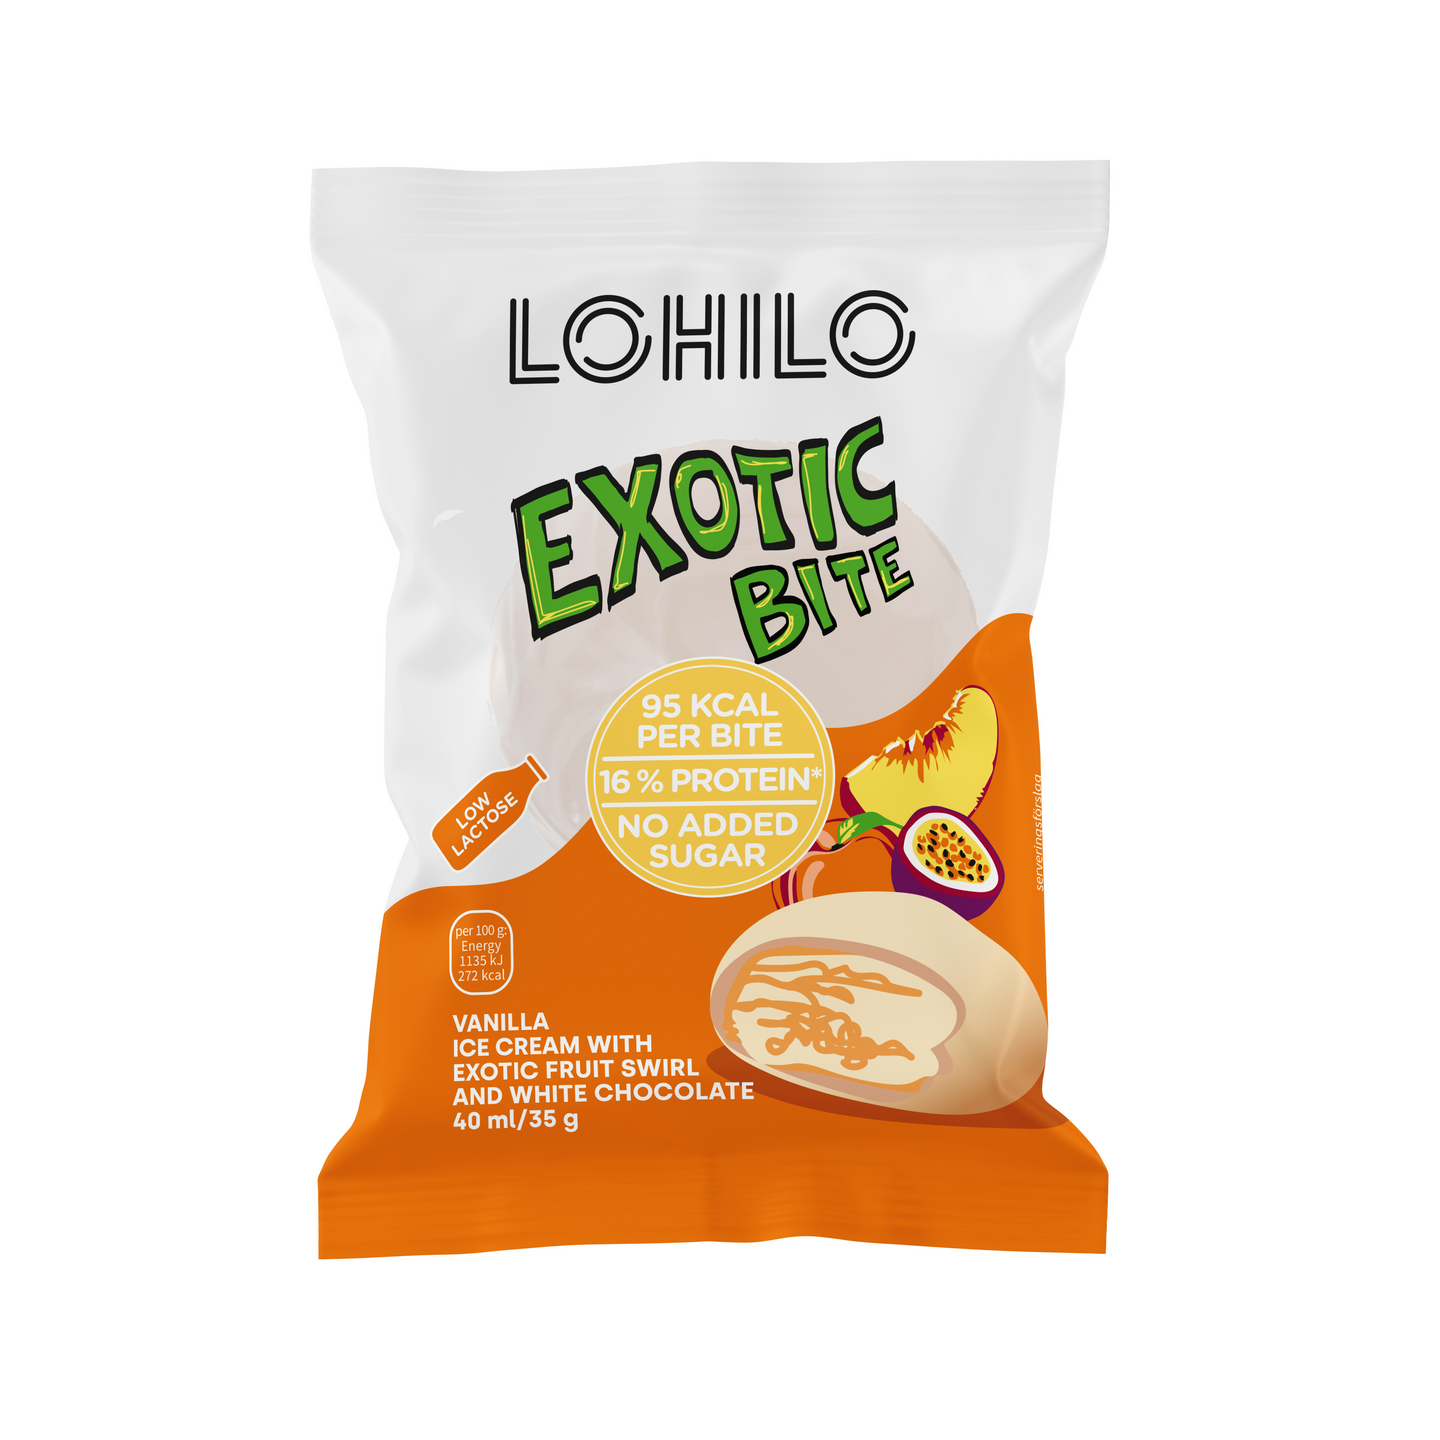 LOHILO Exotic Bite proteiinijäätelö 35g